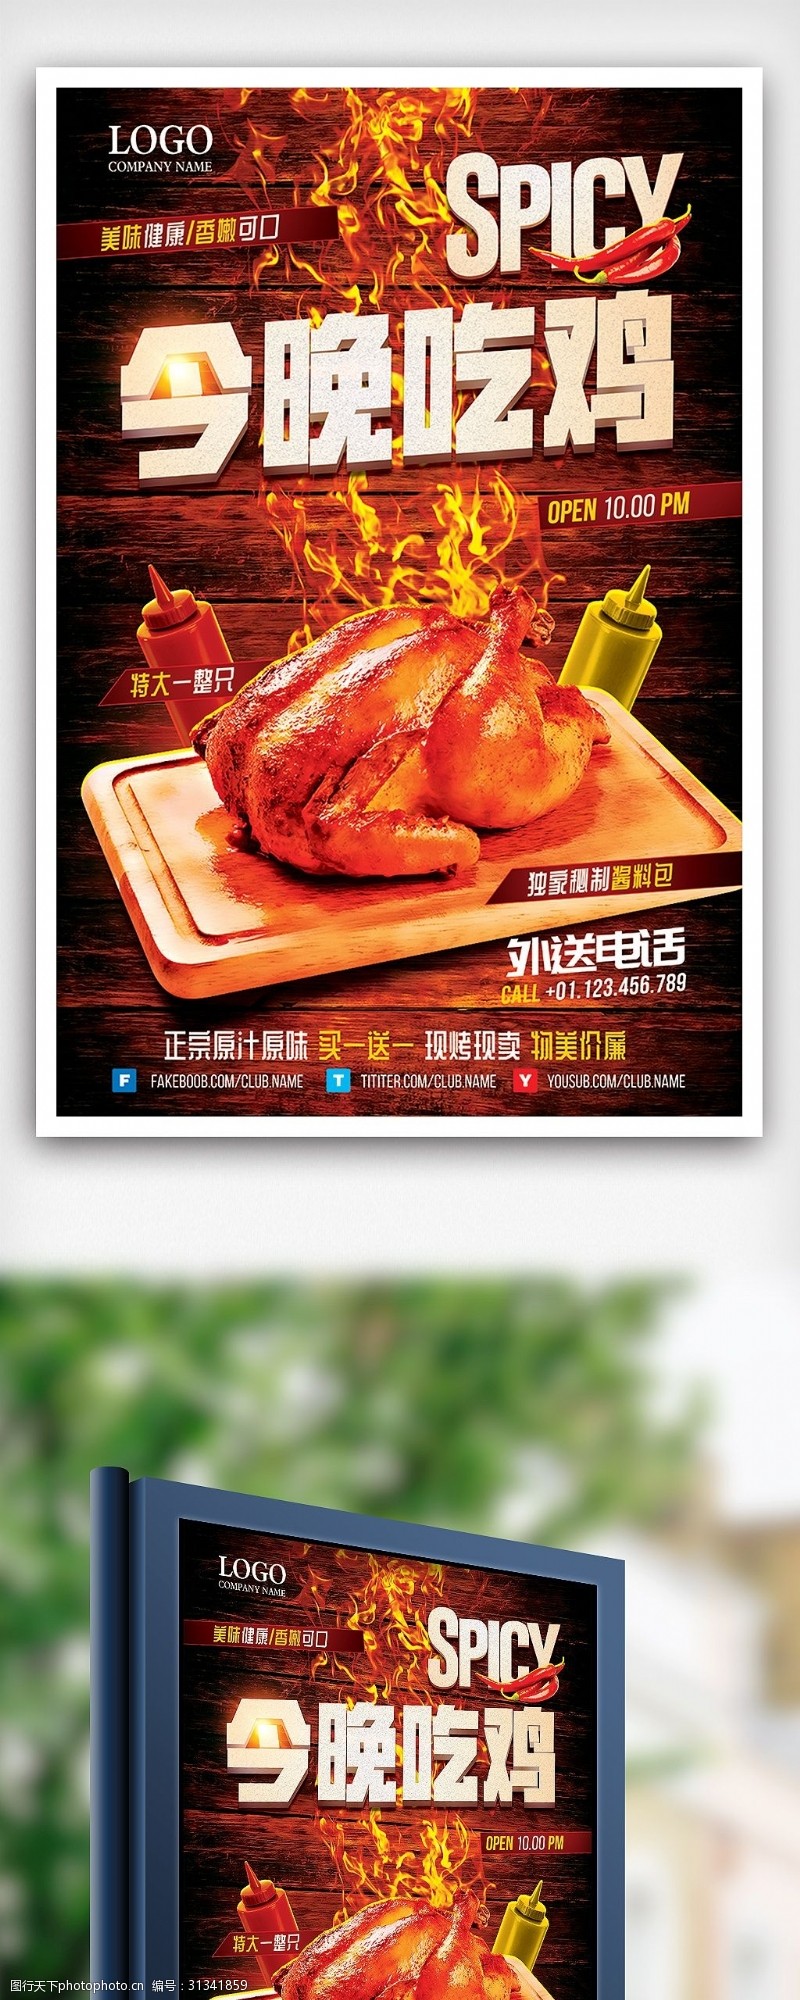 特价图片免费下载今晚吃鸡美味烤鸡特价促销海报设计